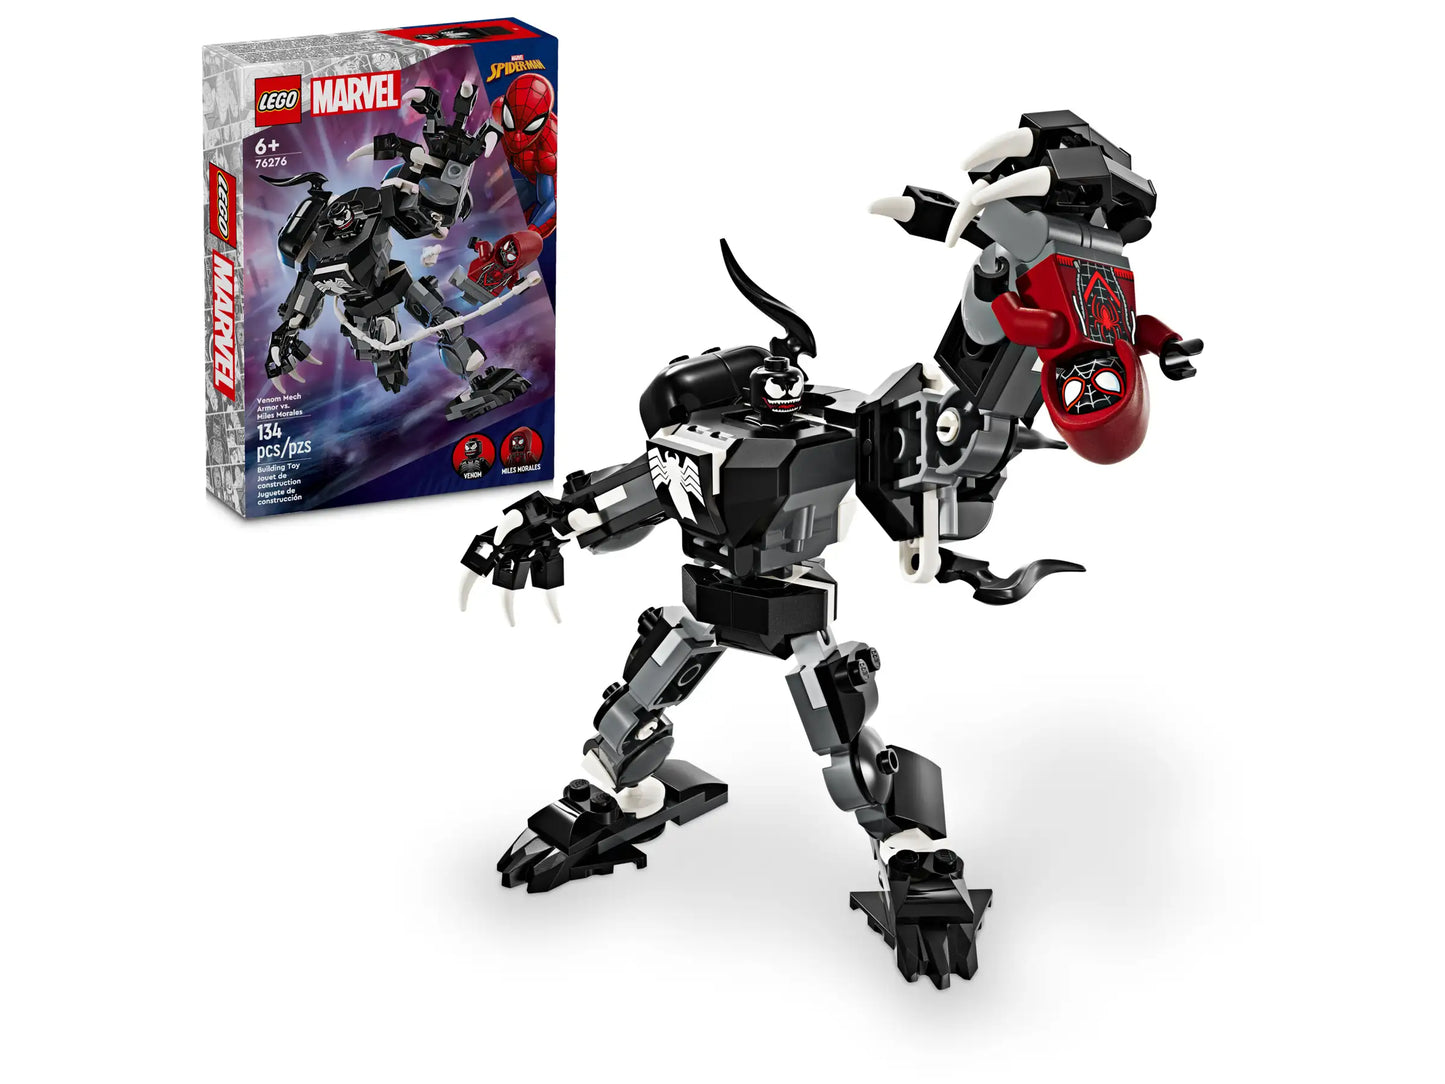 LEGO: Marvel Venom Mech Armor vs. Mile Morales